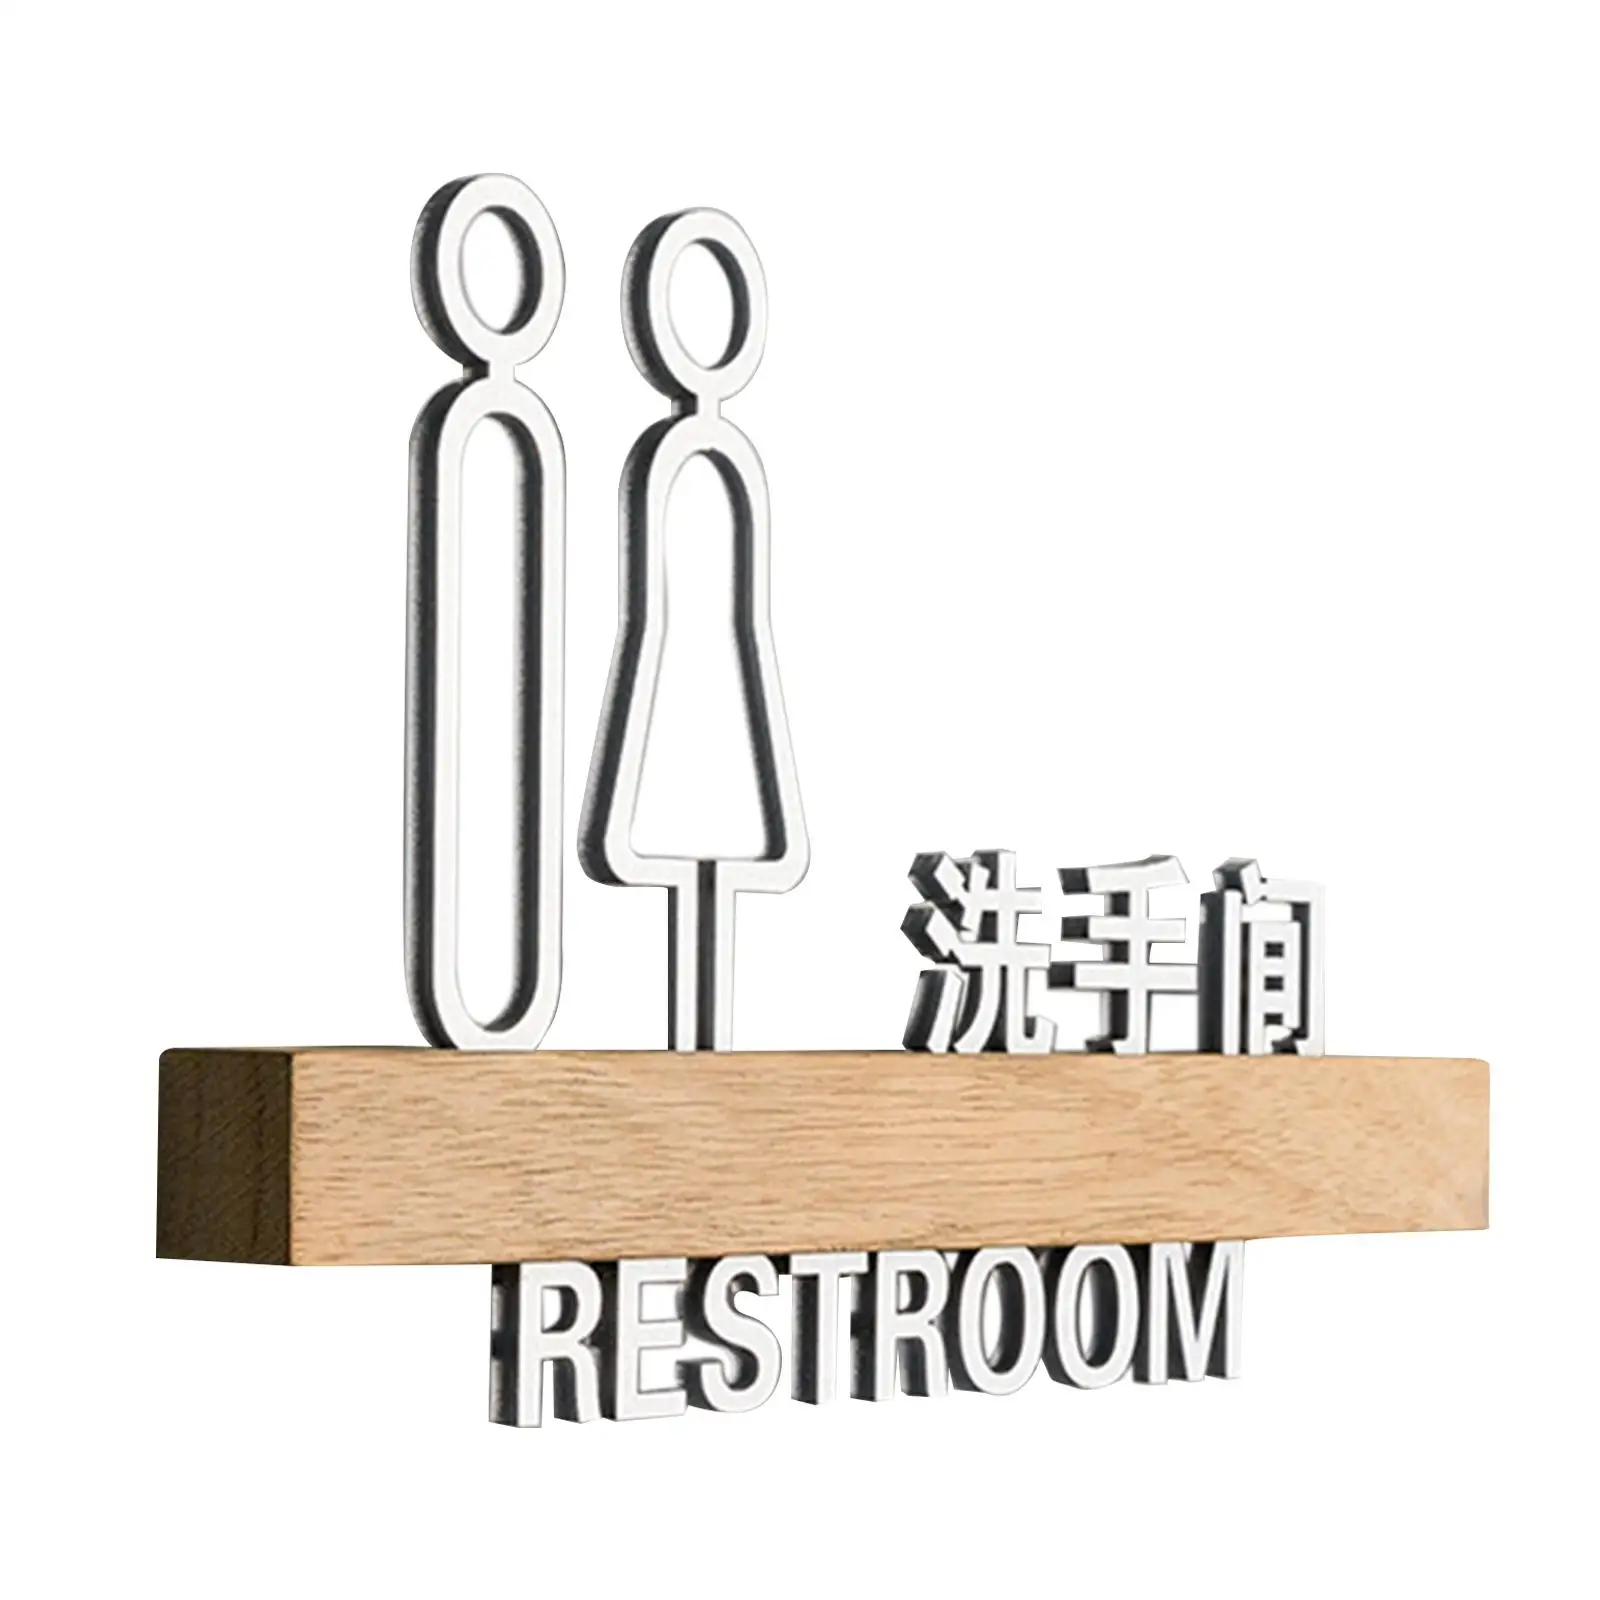 

Дверной знак для туалета, вывеска для двери ванной комнаты, табличка для ванной комнаты, декор для общественных мест, развлекательный магазин